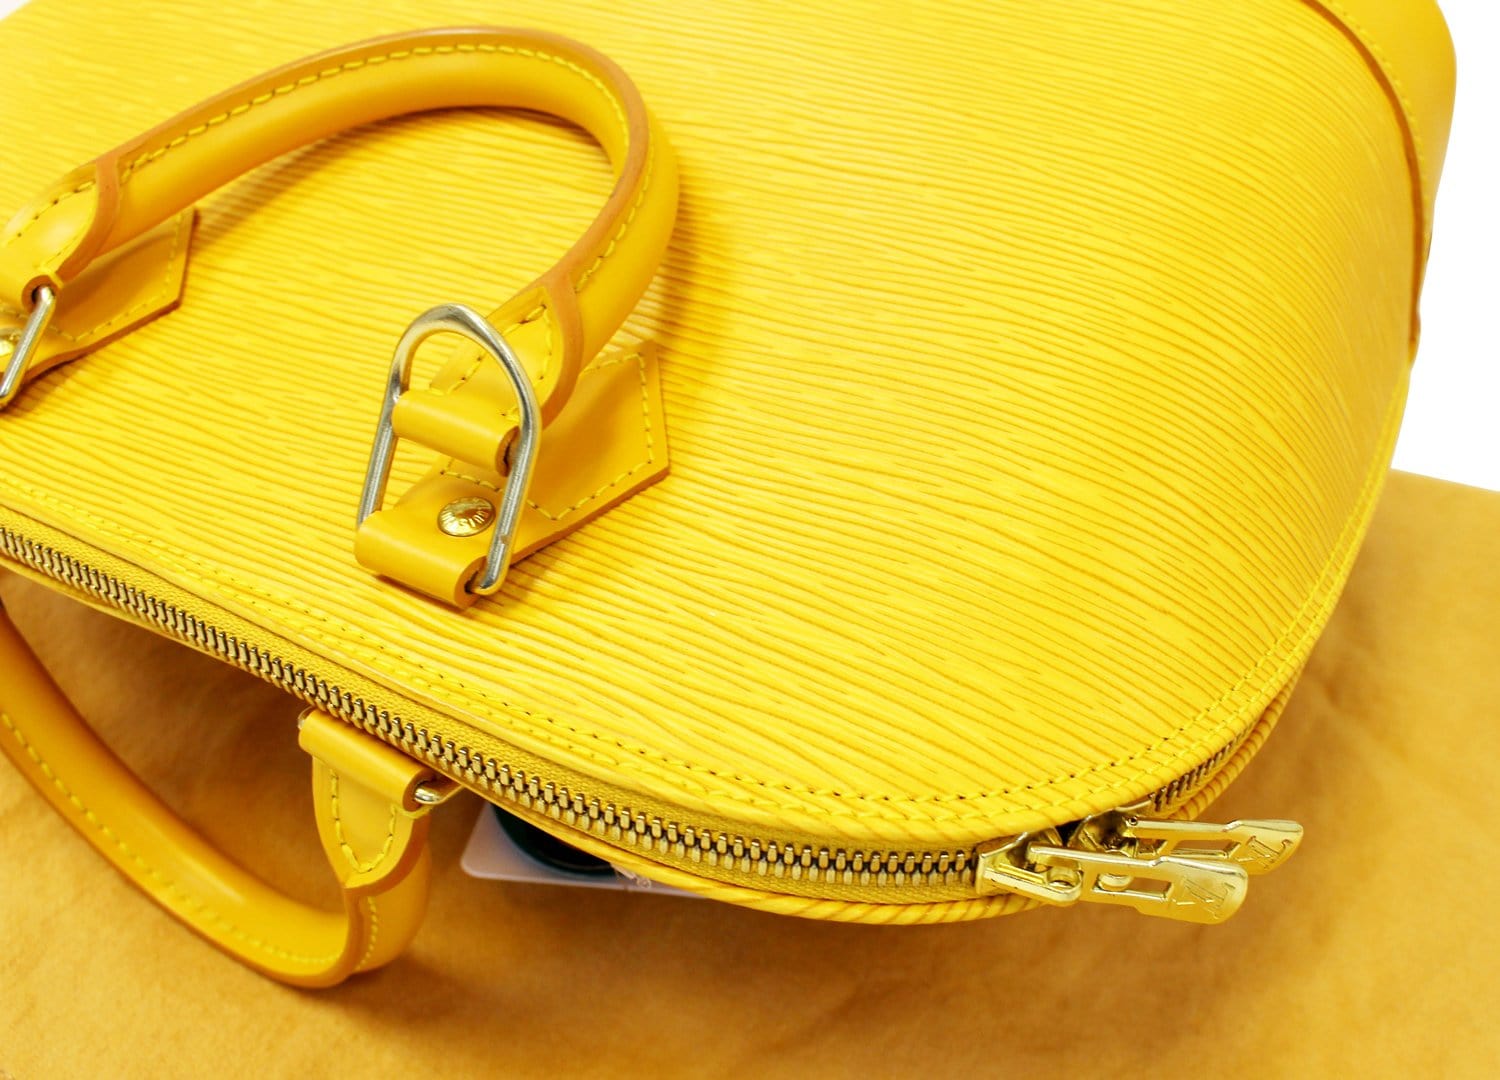 Louis Vuitton Tassil Yellow Epi Leather Alma Bag - Yoogi's Closet